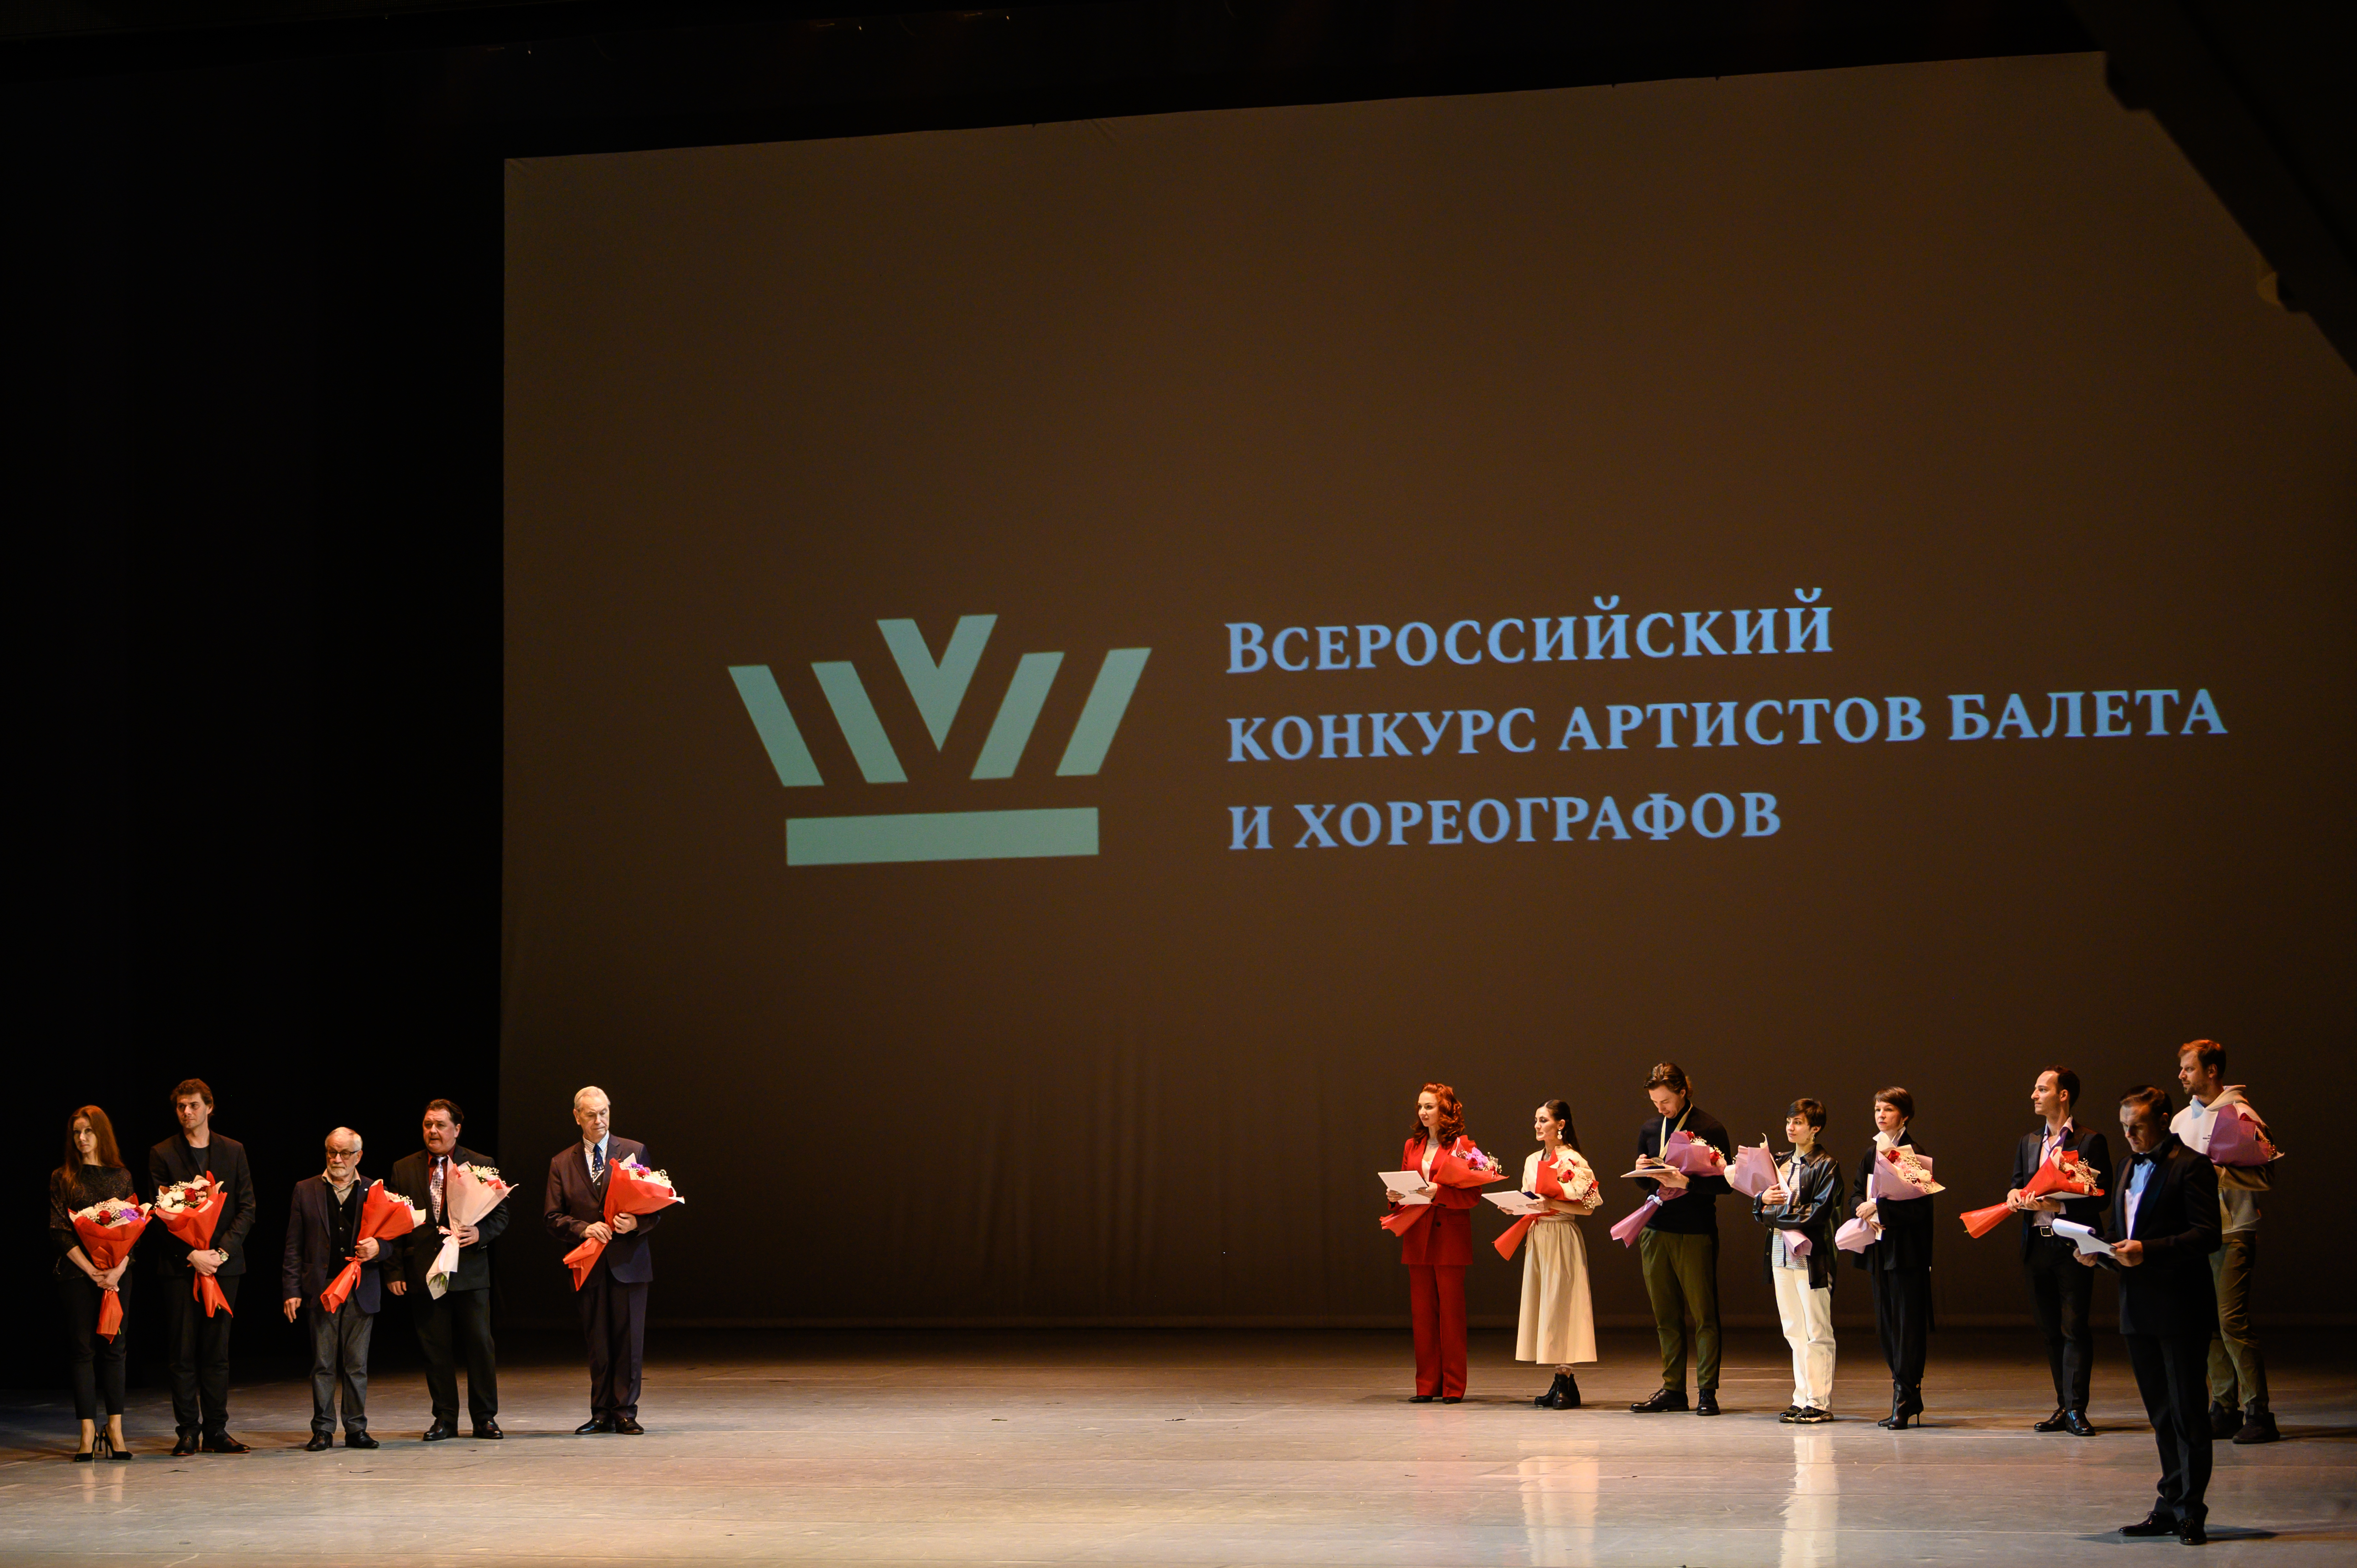 Всероссийский конкурс артистов и хореографов